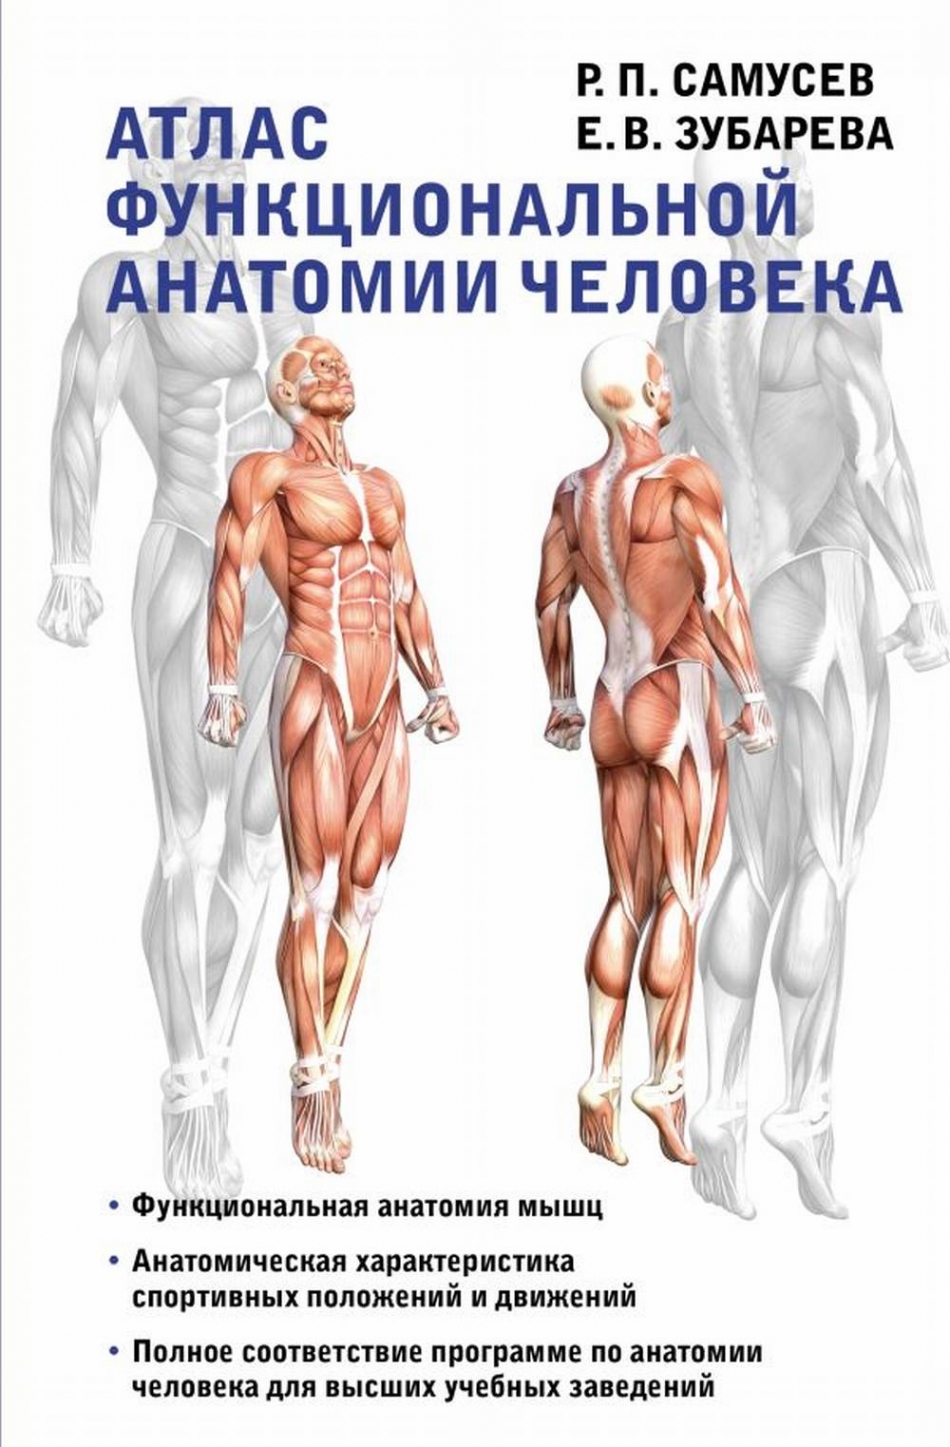 Самусев Р.П., Зубарева Е.В. - Атлас функциональной анатомии человека 